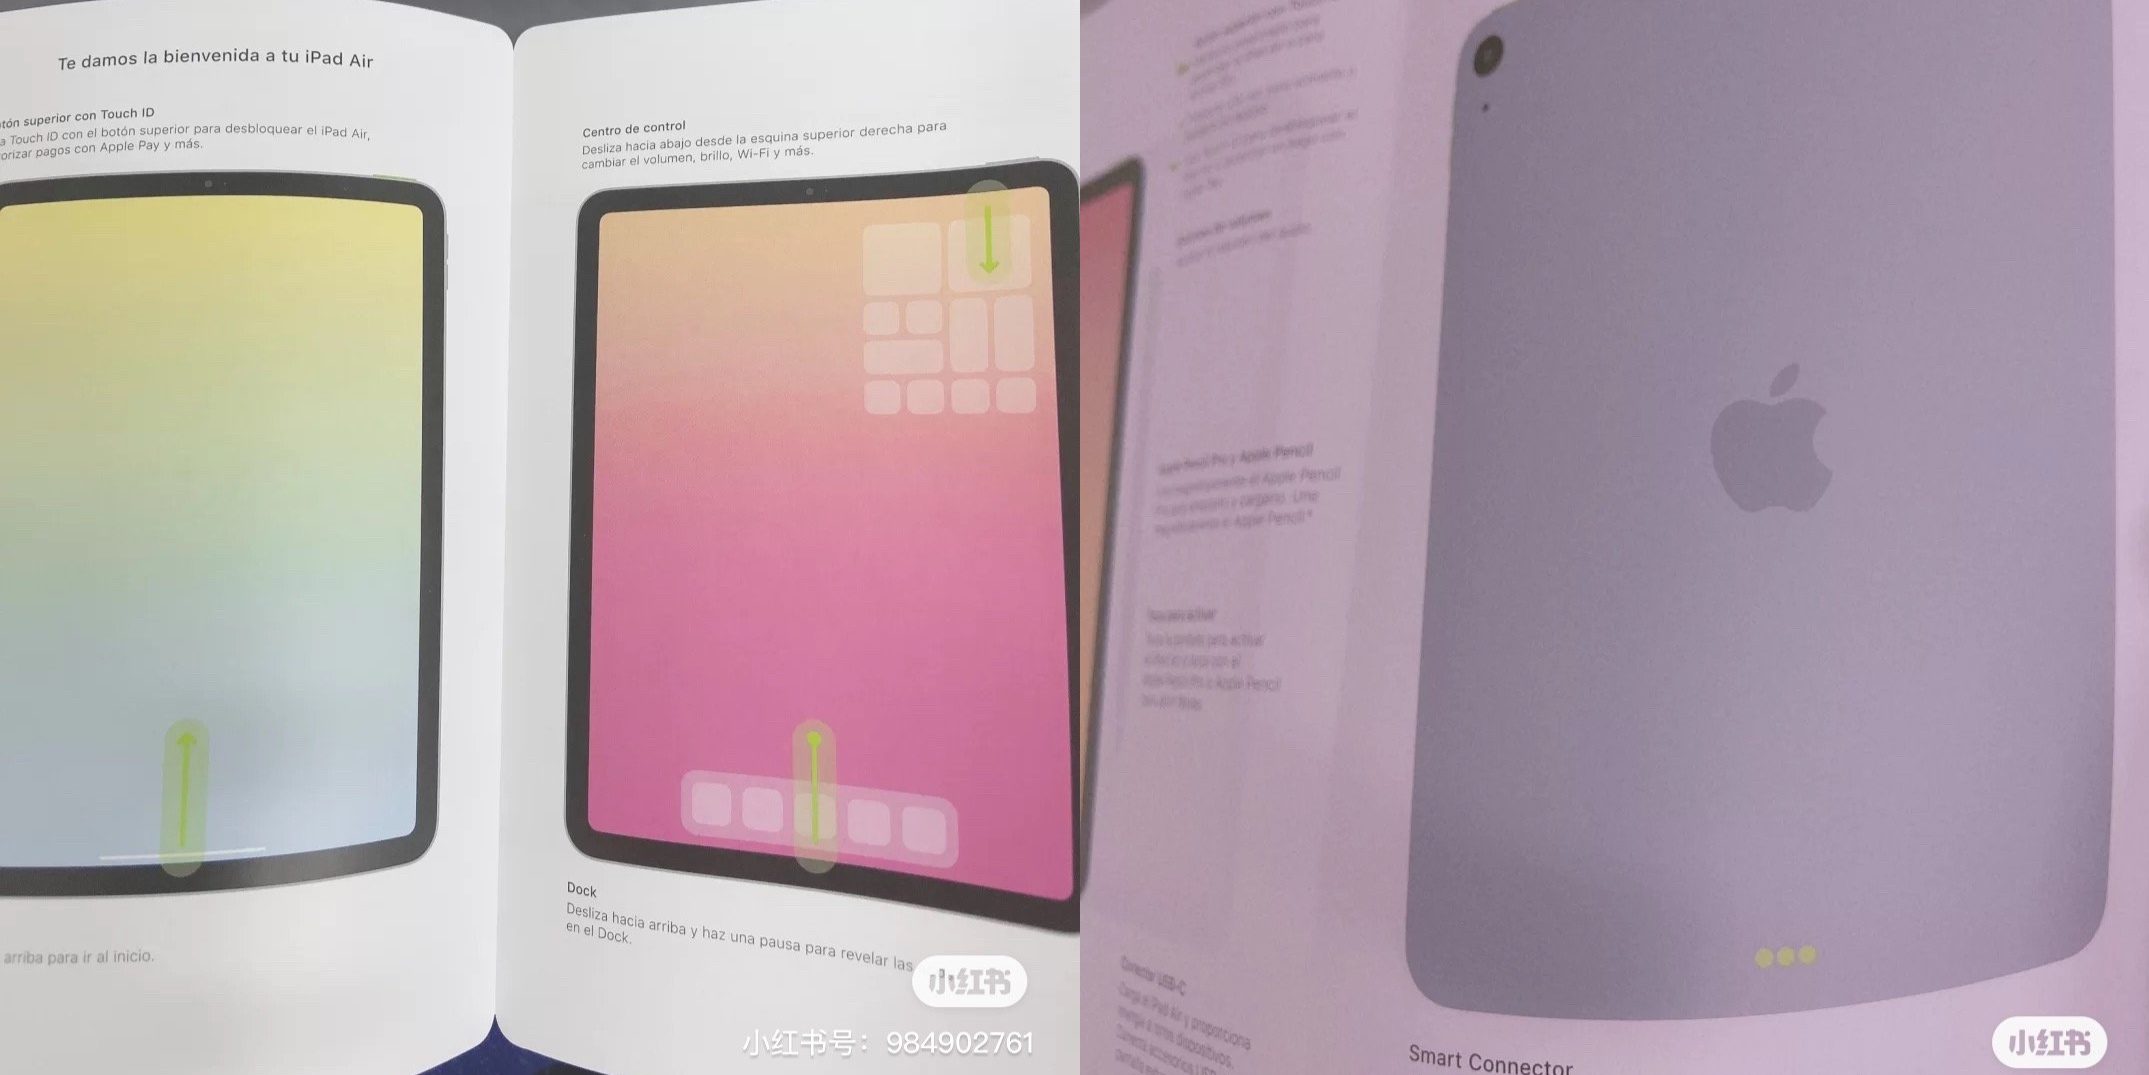 Lộ thiết kế iPad Air 4 mới: Touch ID ở cạnh, khá giống iPad Pro, ra mắt đầu 2021